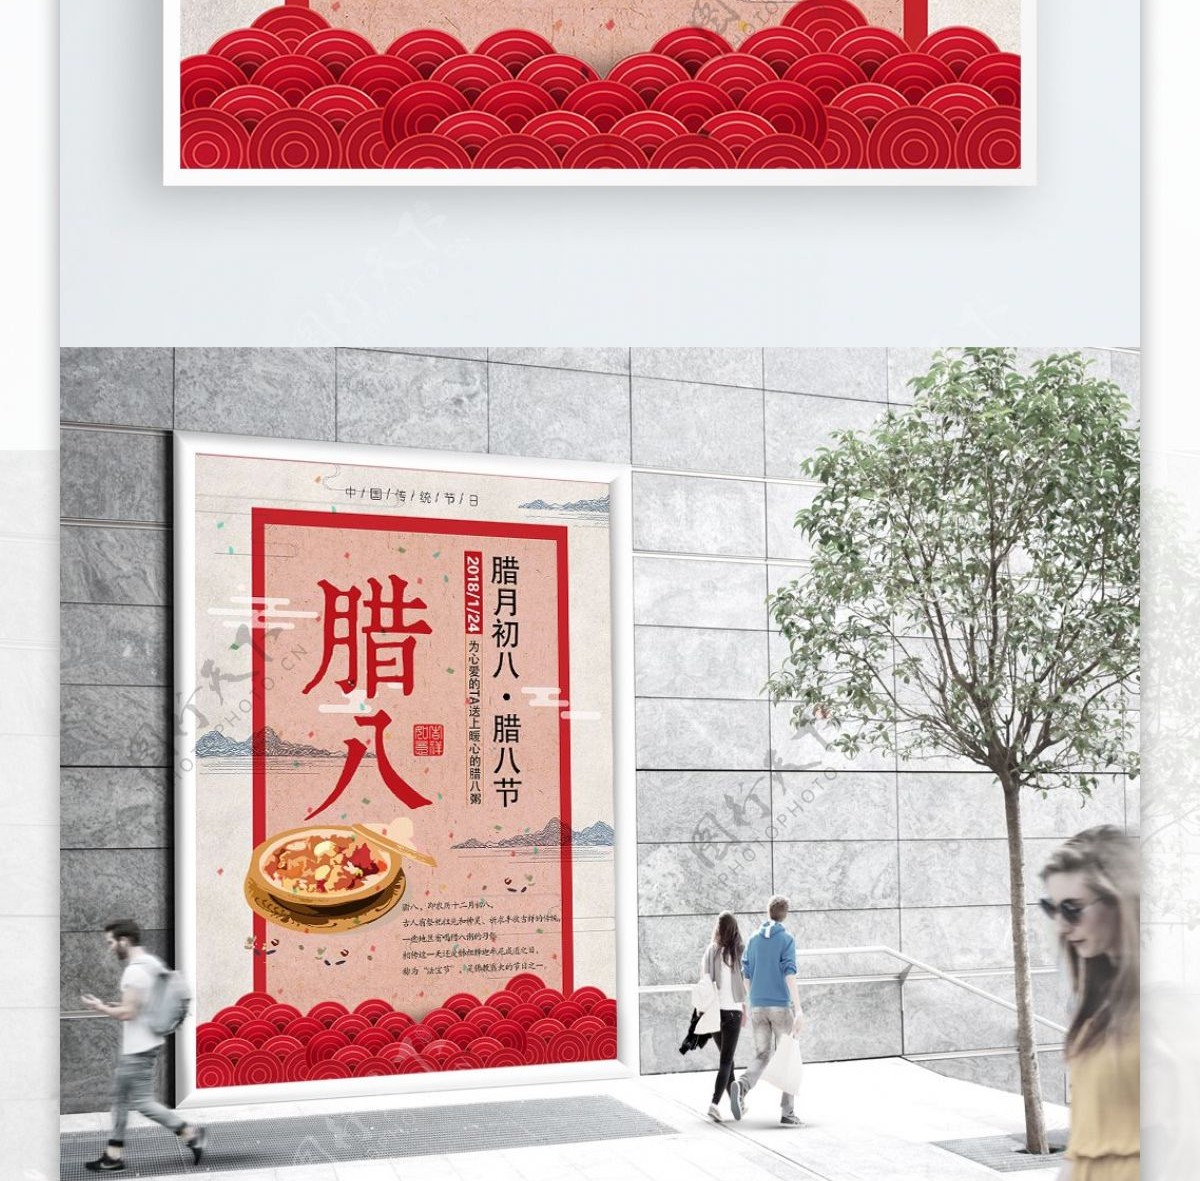 腊八节中国风节日促销海报PSD模板